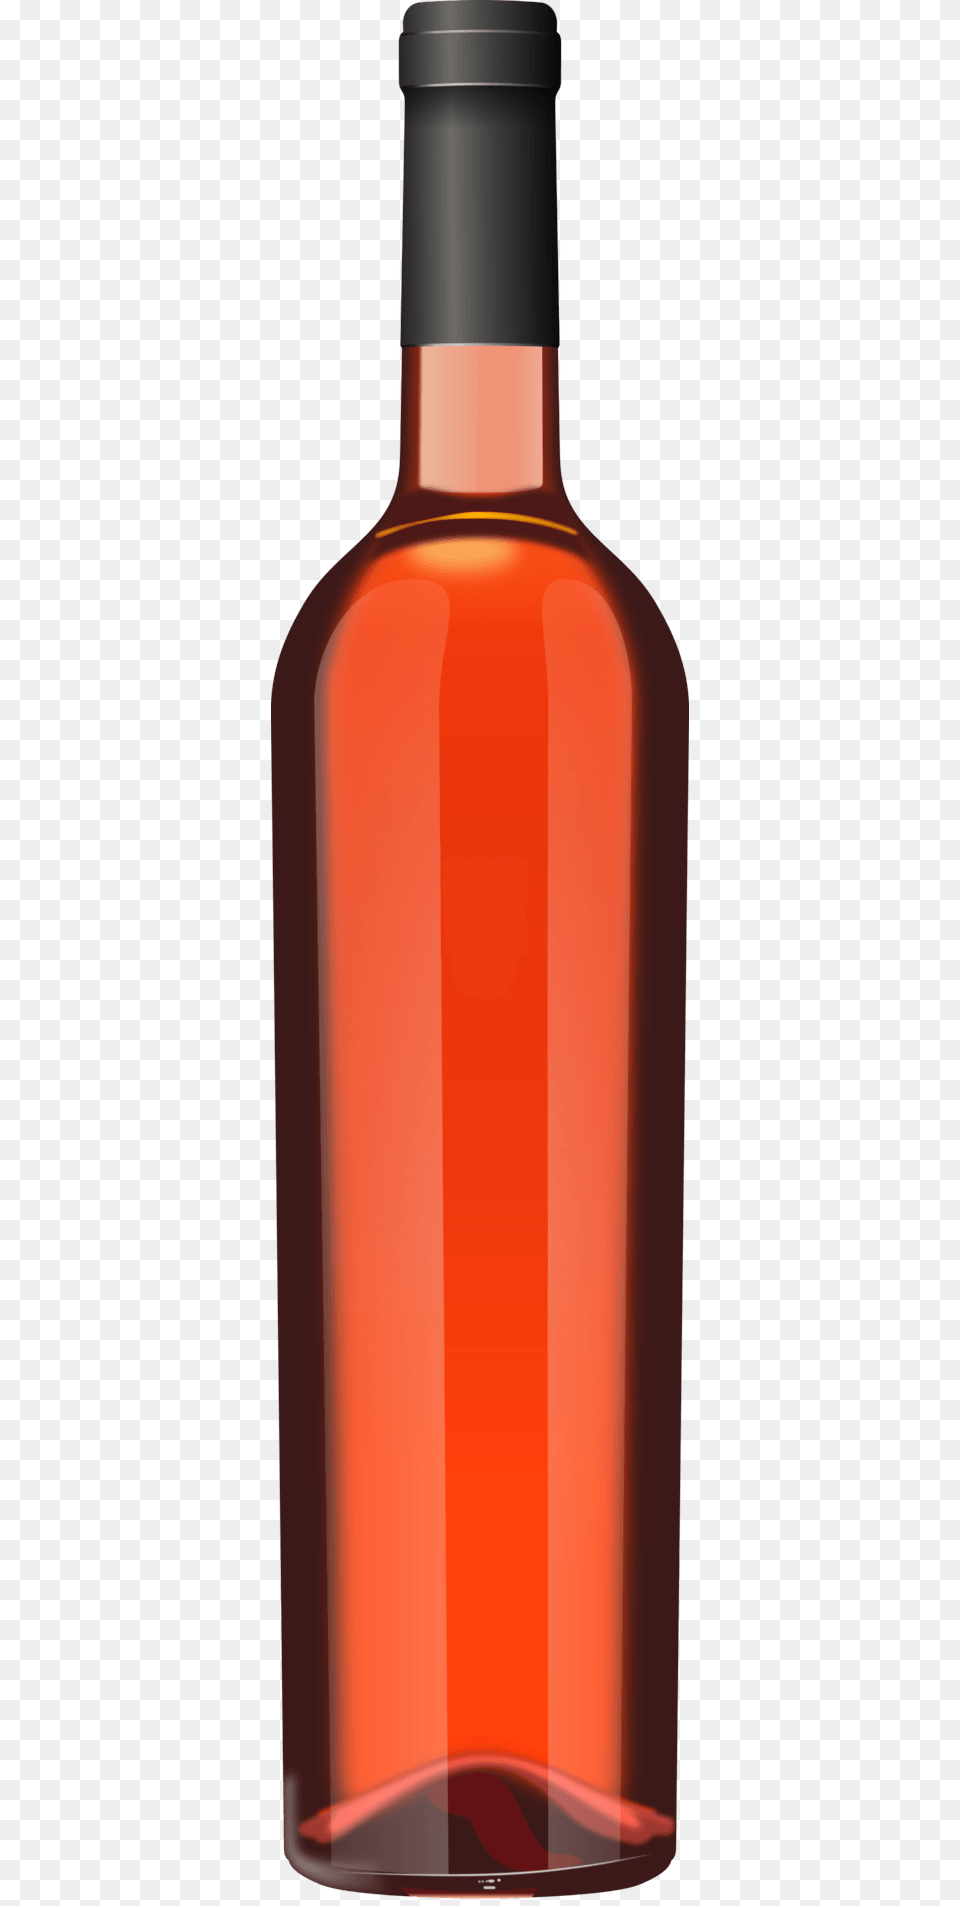 Rose Wine Bottle, Alcohol, Beverage, Liquor, Wine Bottle Png Image